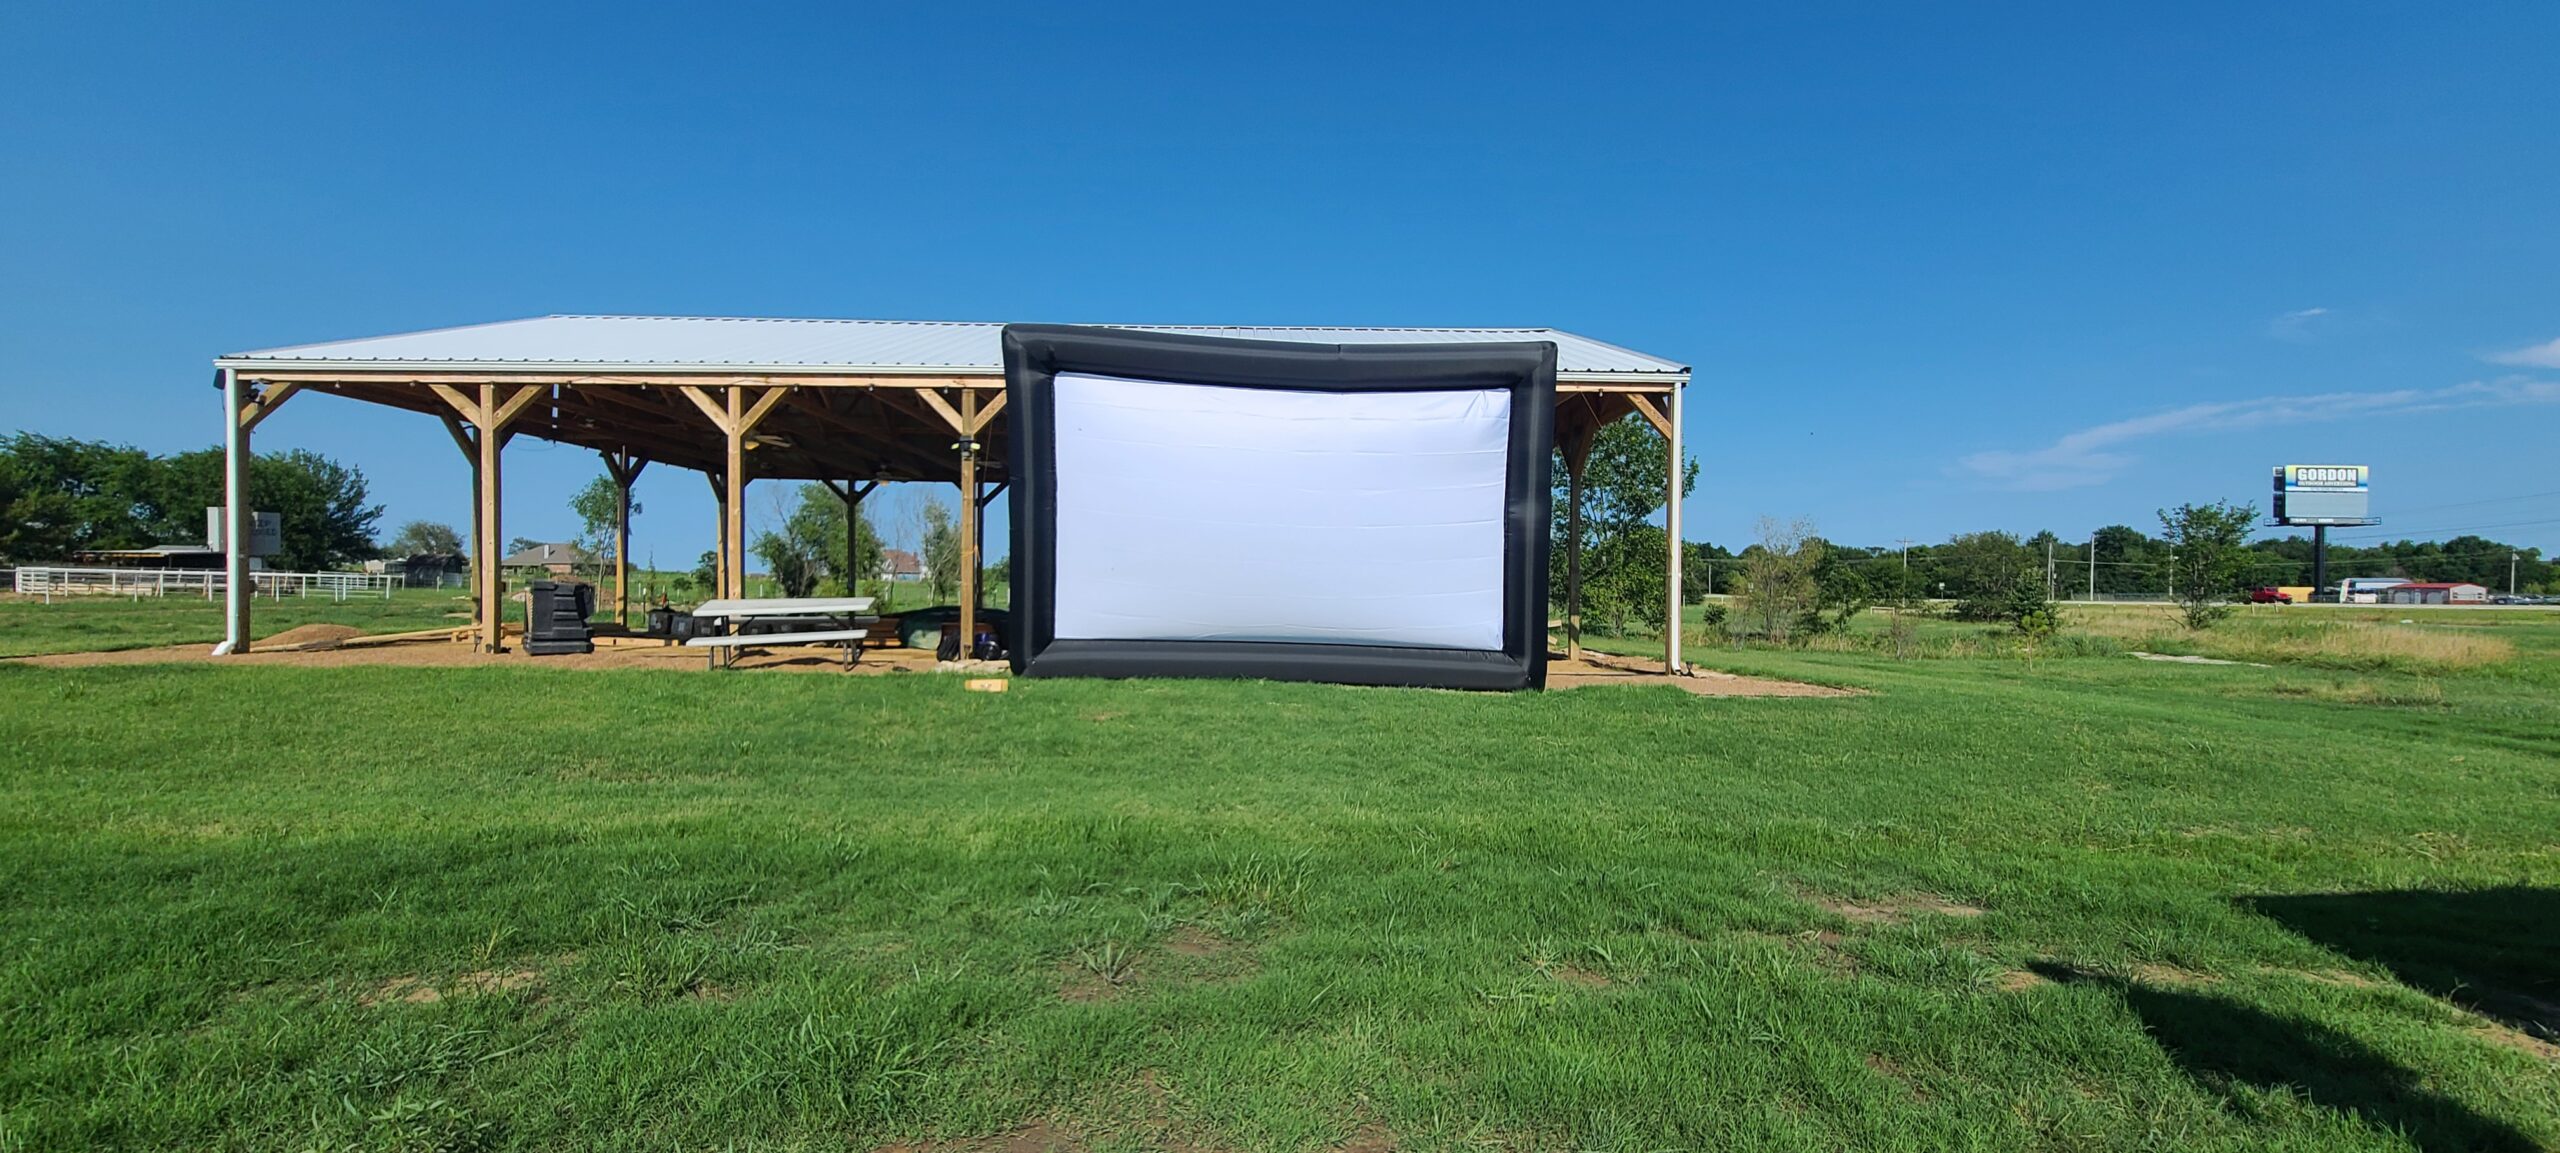 Outdoor movie screen